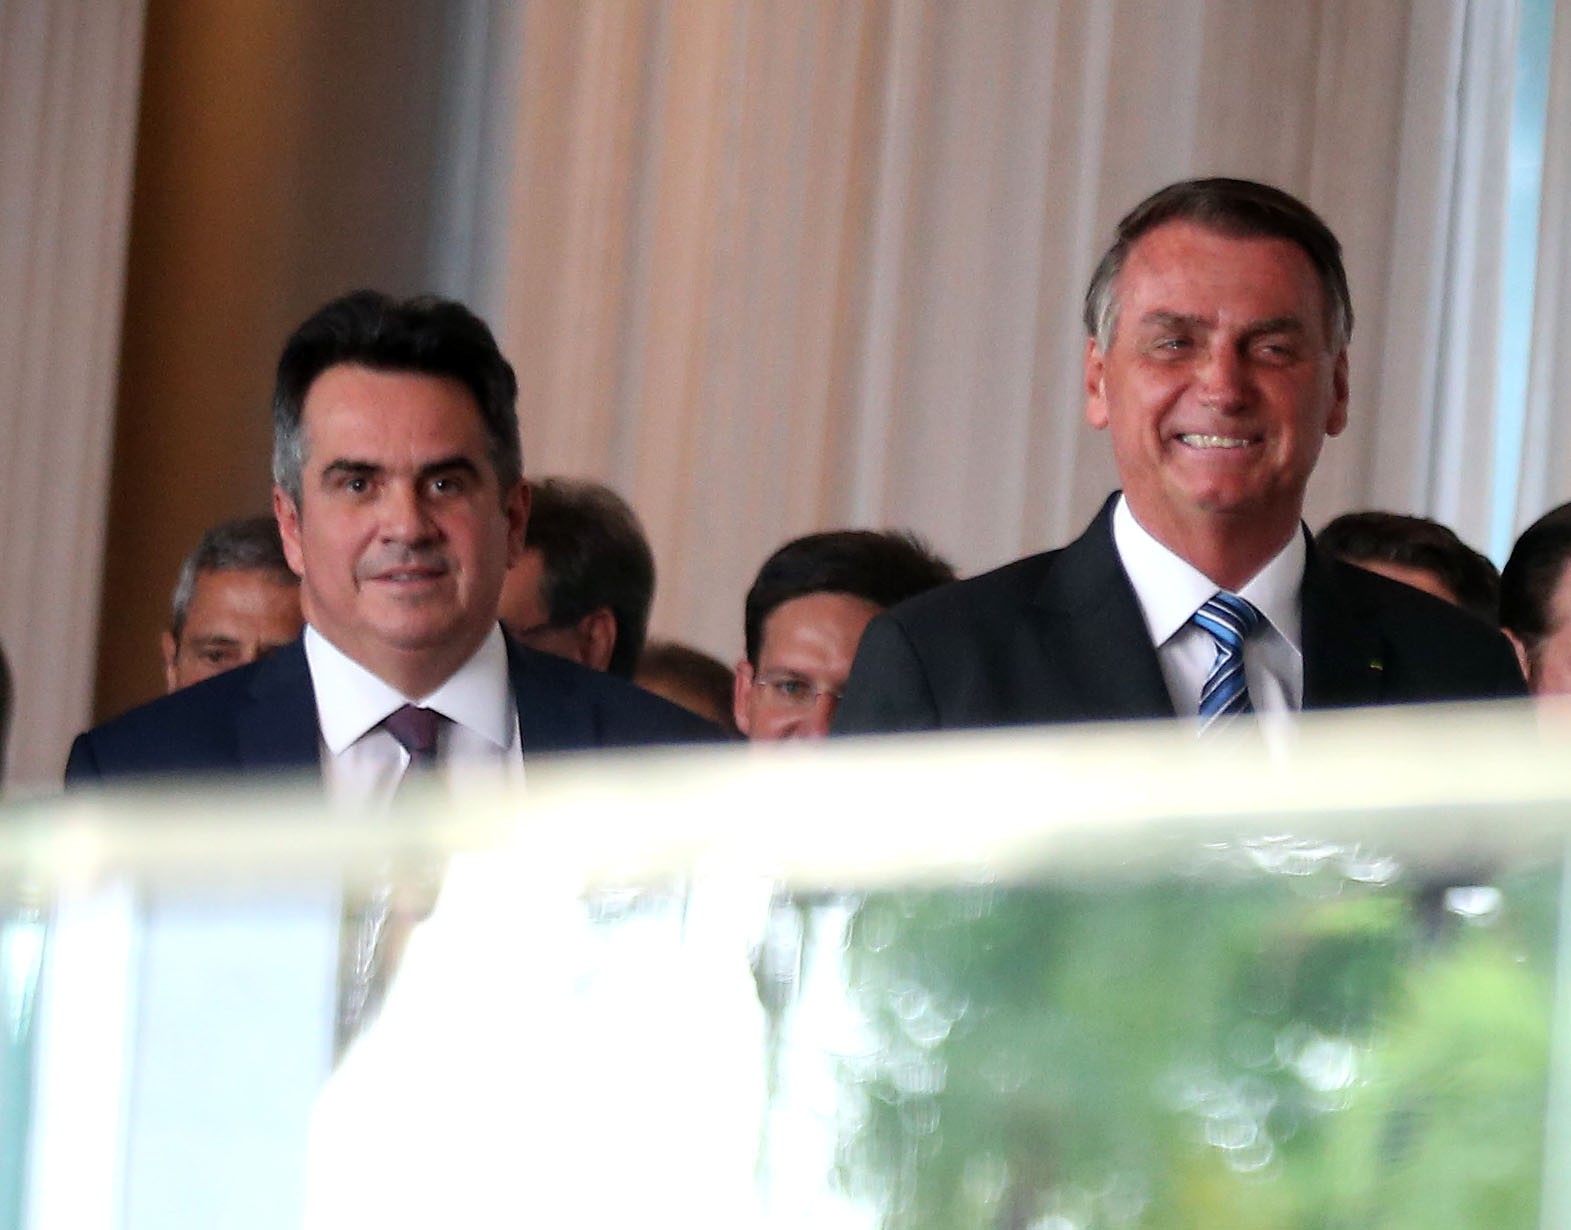 ‘Bolsonaro inelegível vai ficar muito mais forte’, diz senador Ciro Nogueira